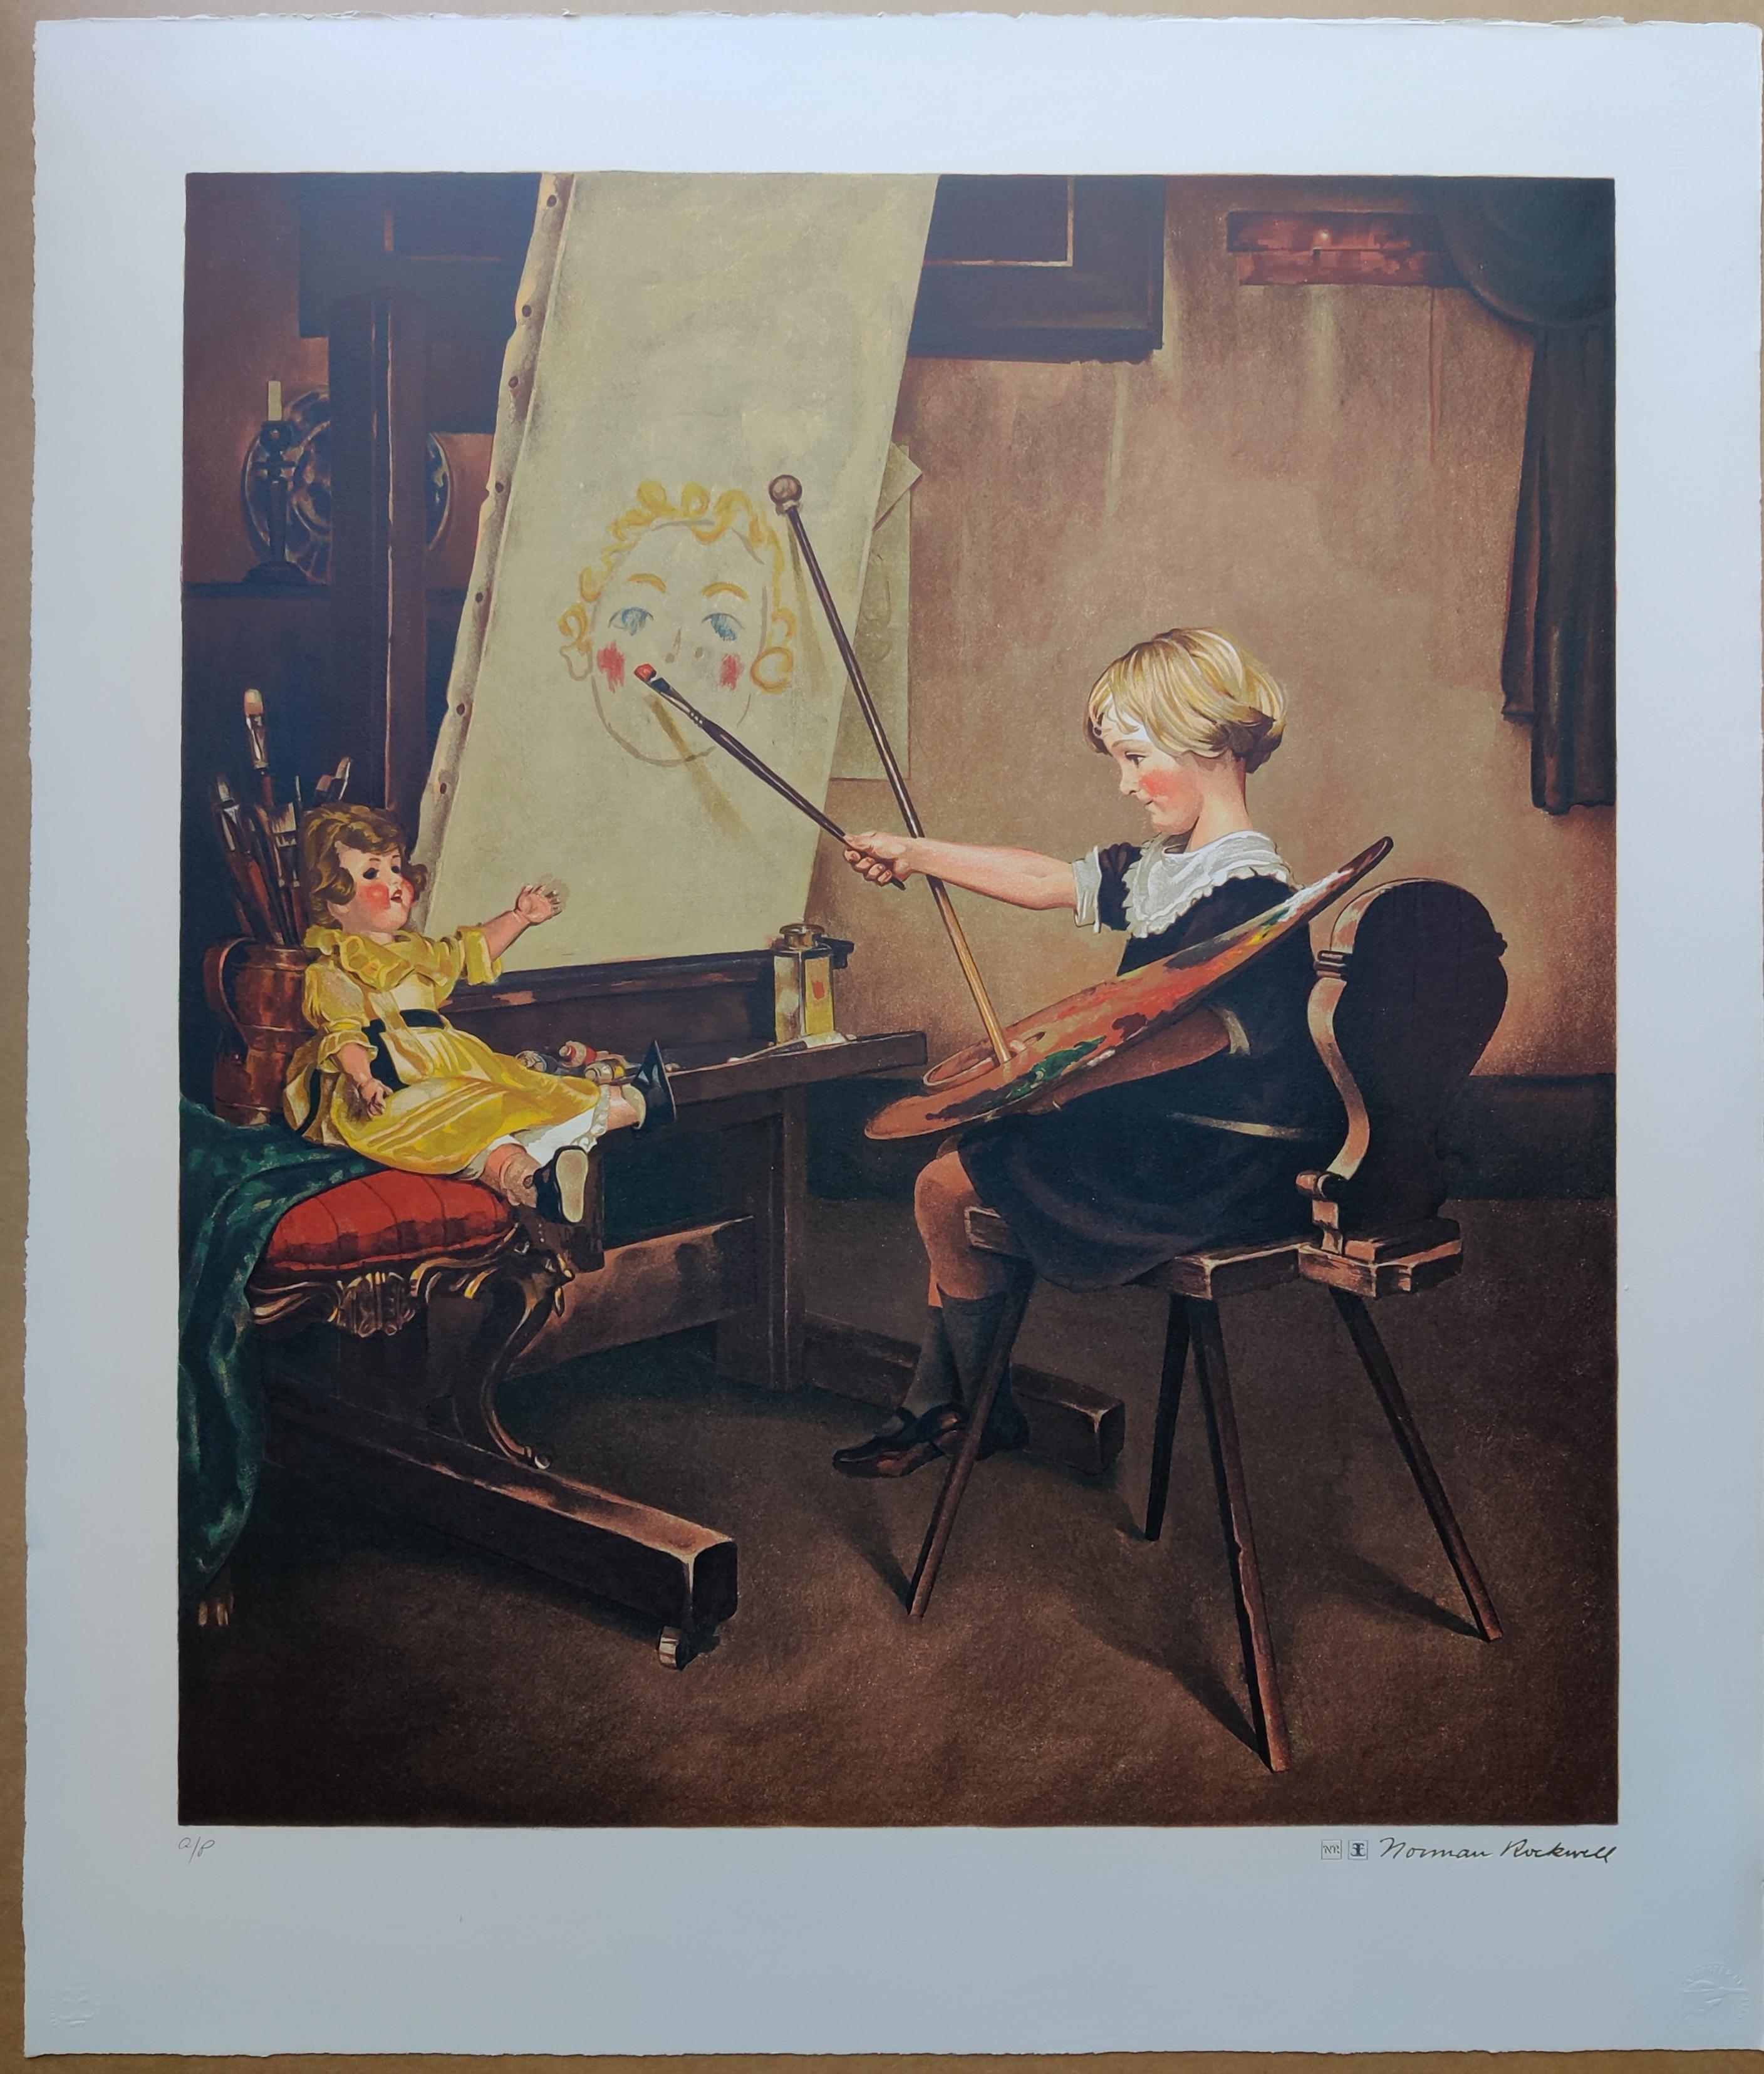 Norman Rockwell
Artist's Daughter
Encore Edition Drucke, genehmigt von Norman Rockwell
Nummeriert AP unten links mit Blindstempel. 
Goldgeprägte Signatur unten rechts
Bildgröße: 68,5 x 59,5 cm
Blattgröße: 84,5 x 72,5 cm
Gedruckt von Atelier Ettinger